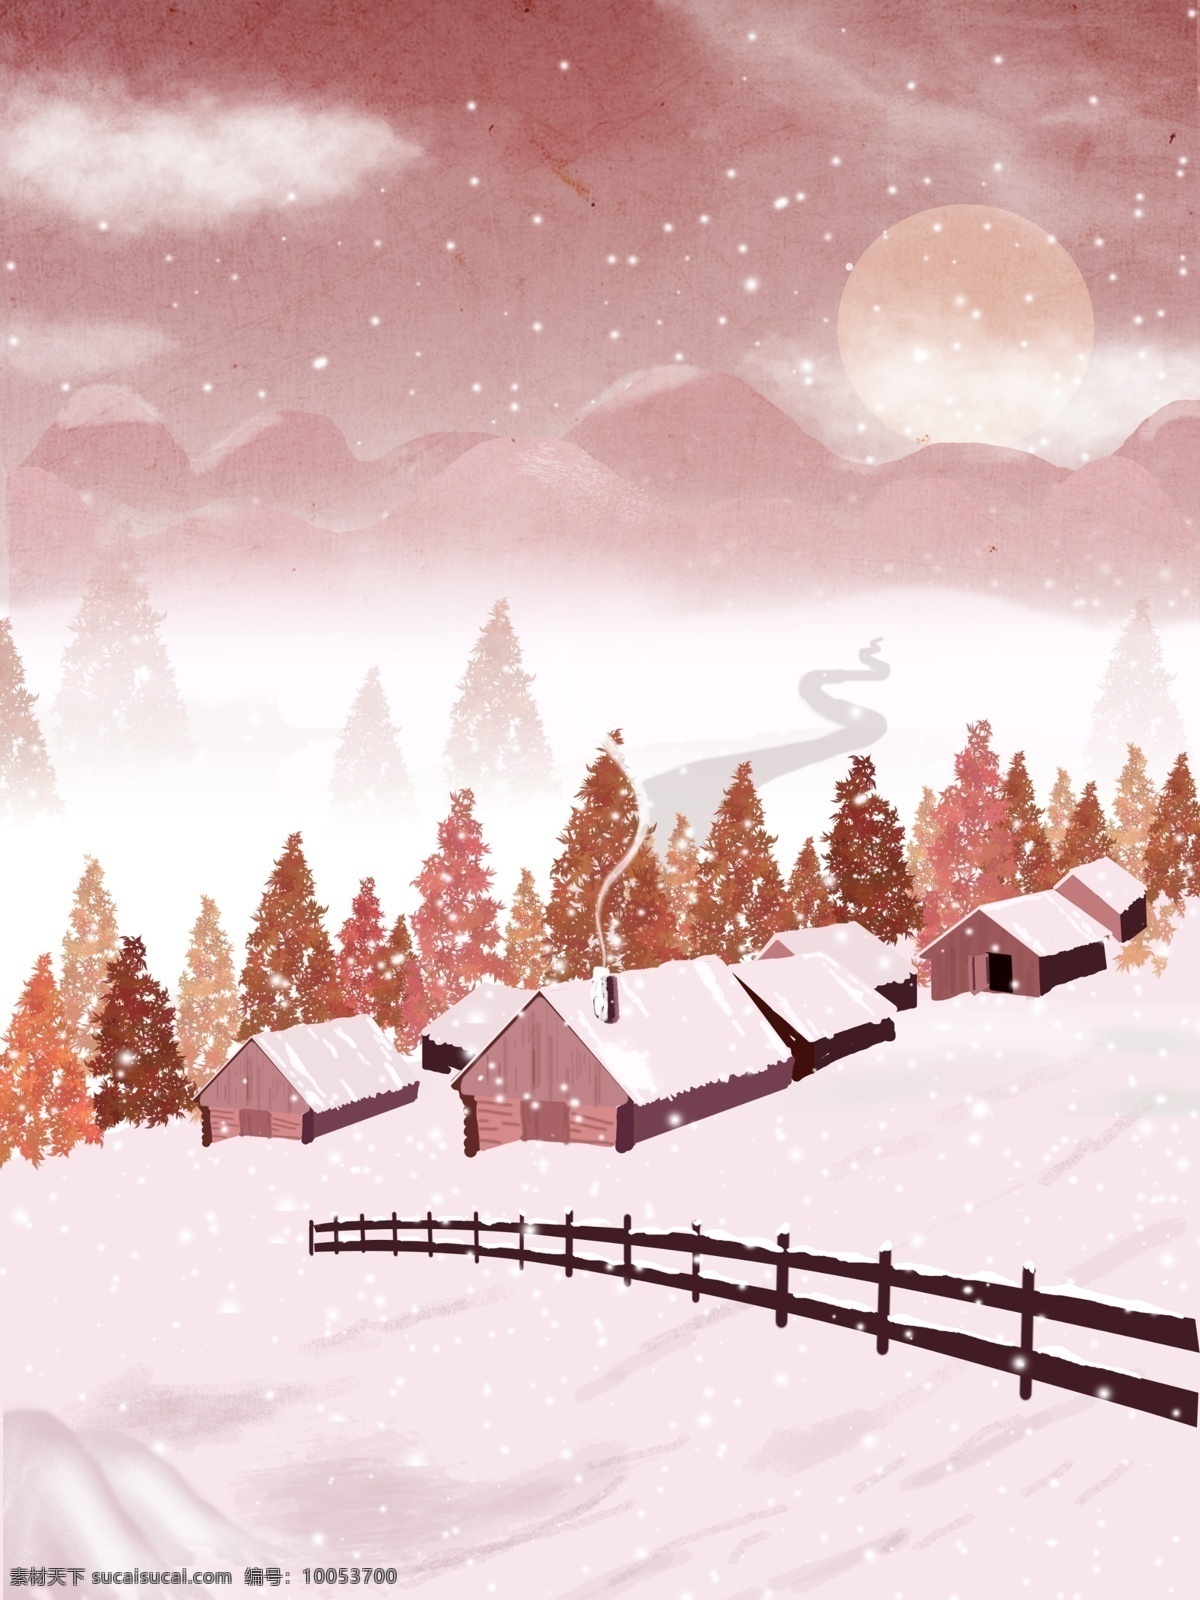 手绘 冬天 里 雪屋 背景 树林 夜空 月亮 冬天快乐 冬季 冬天早晨 背景素材 广告背景素材